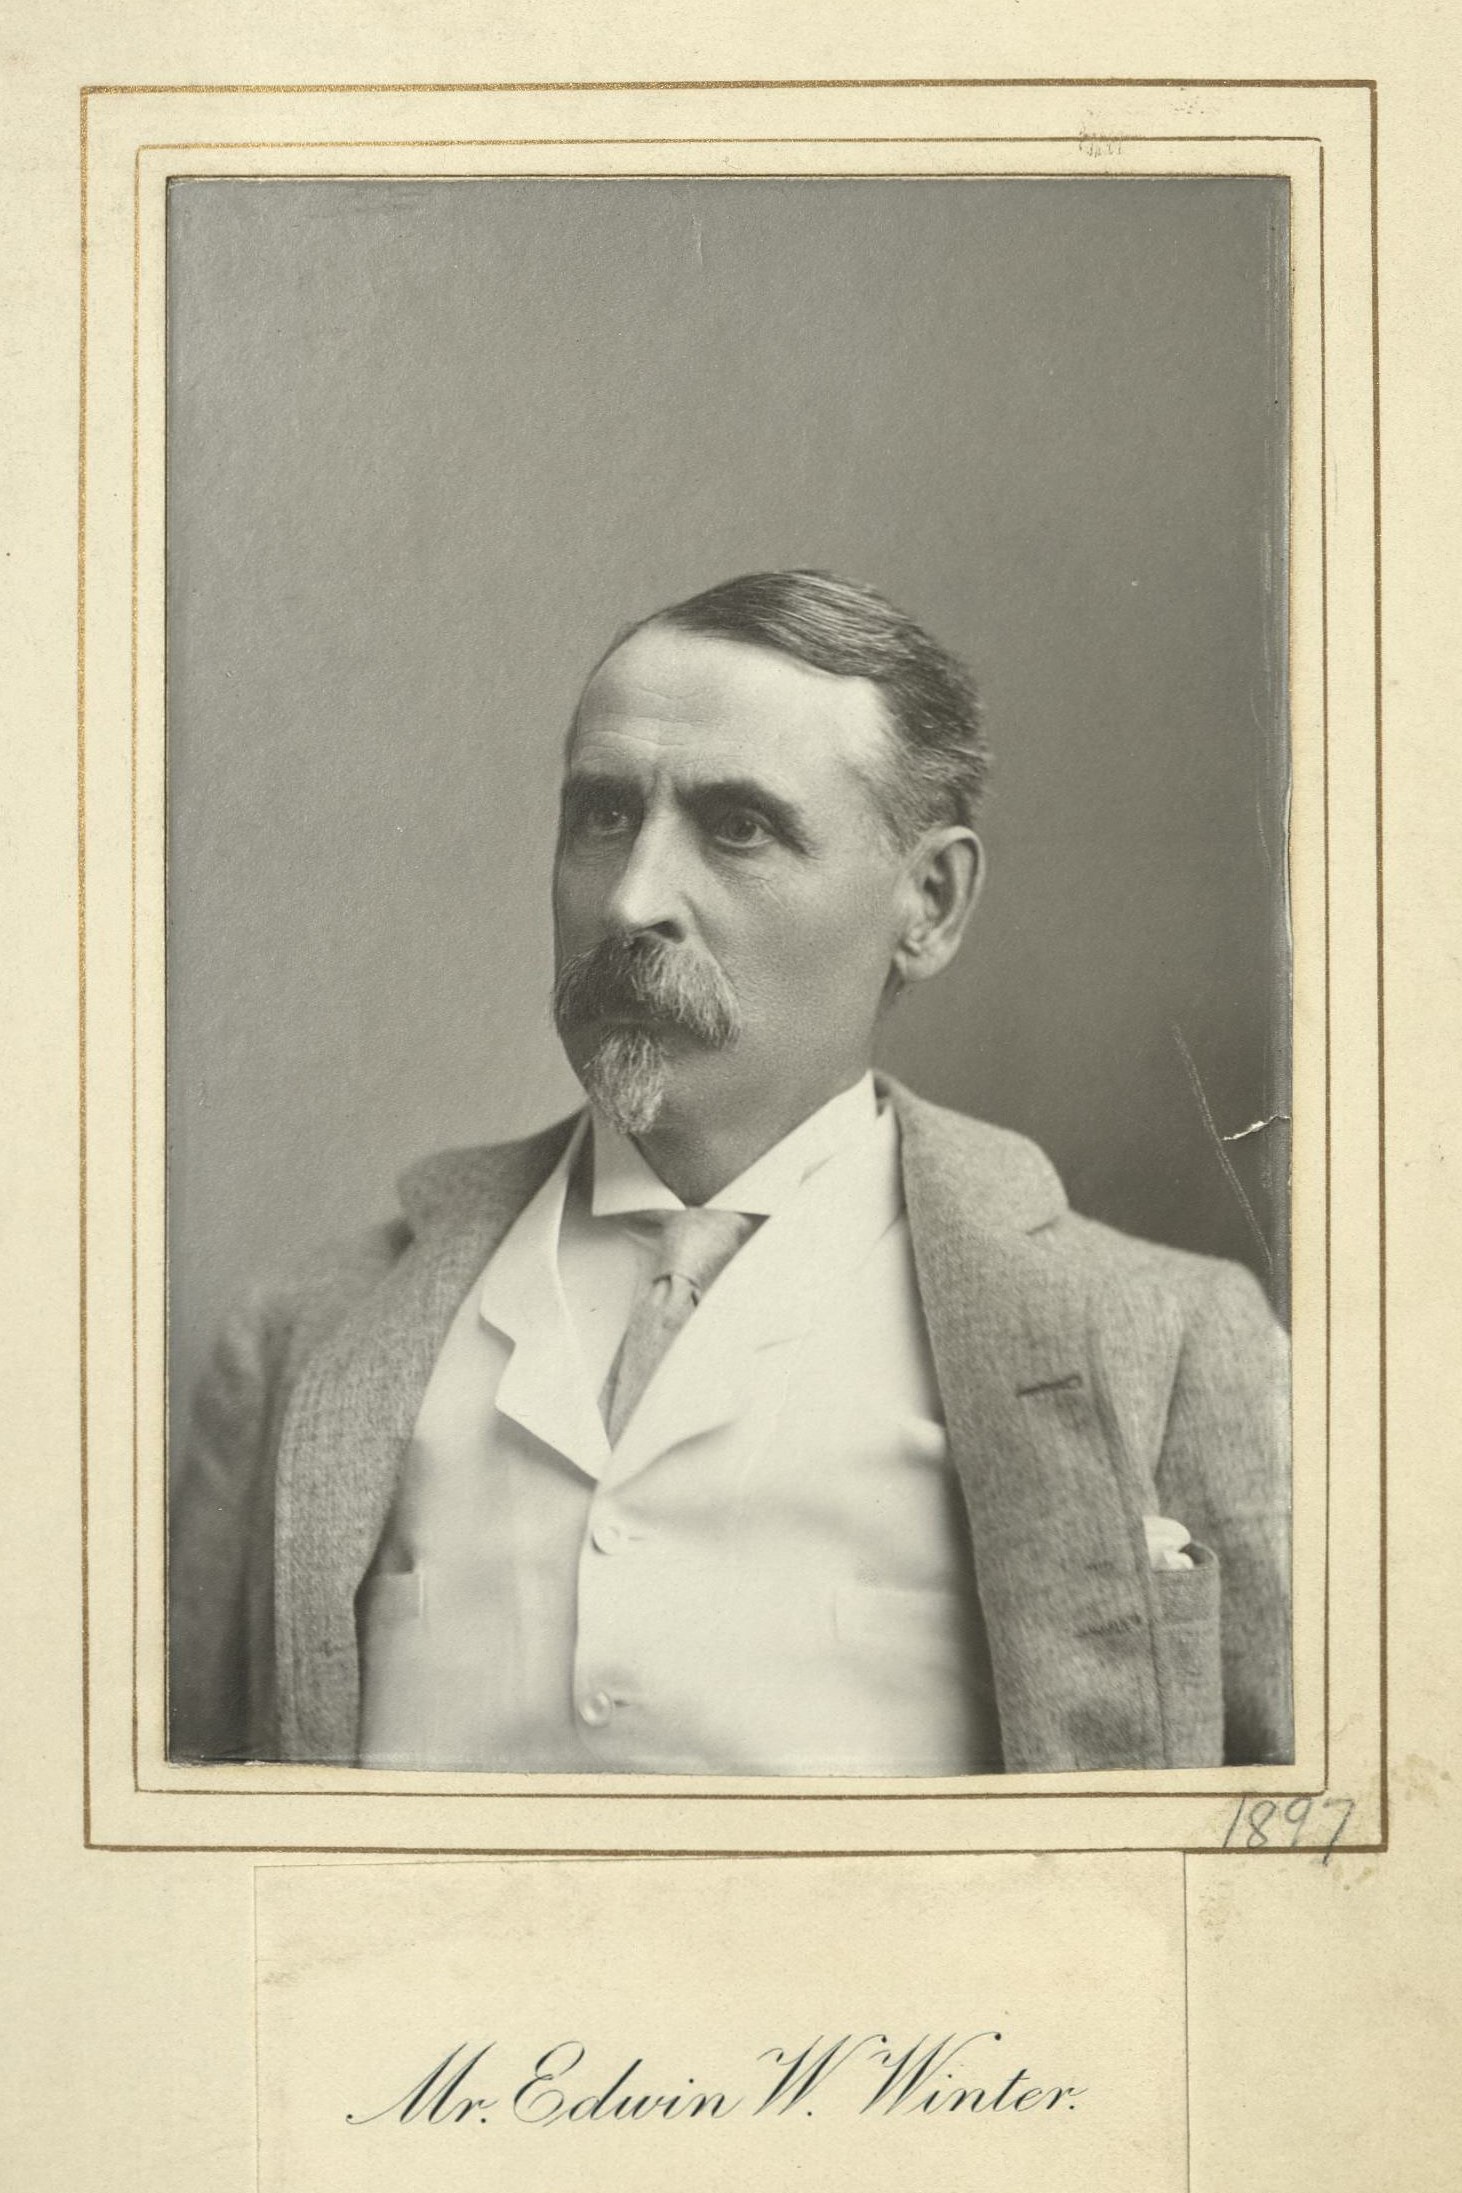 Member portrait of Edwin W. Winter